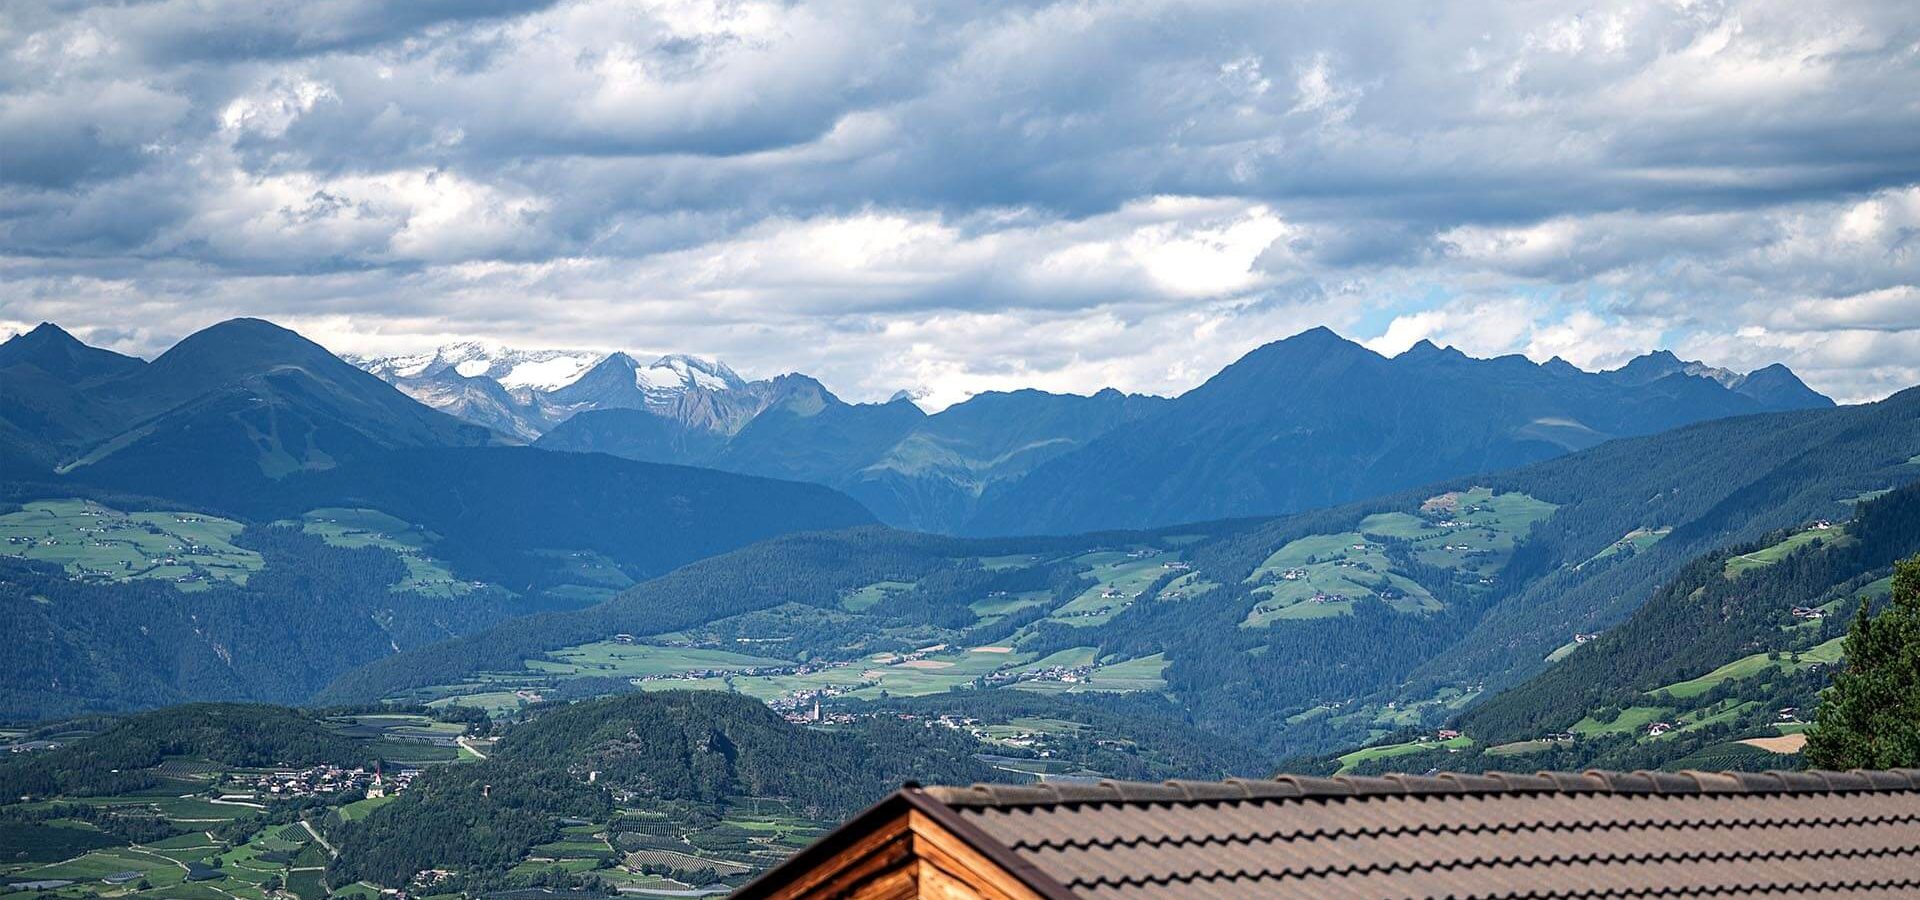 Ferienvergnügen in Südtirol 